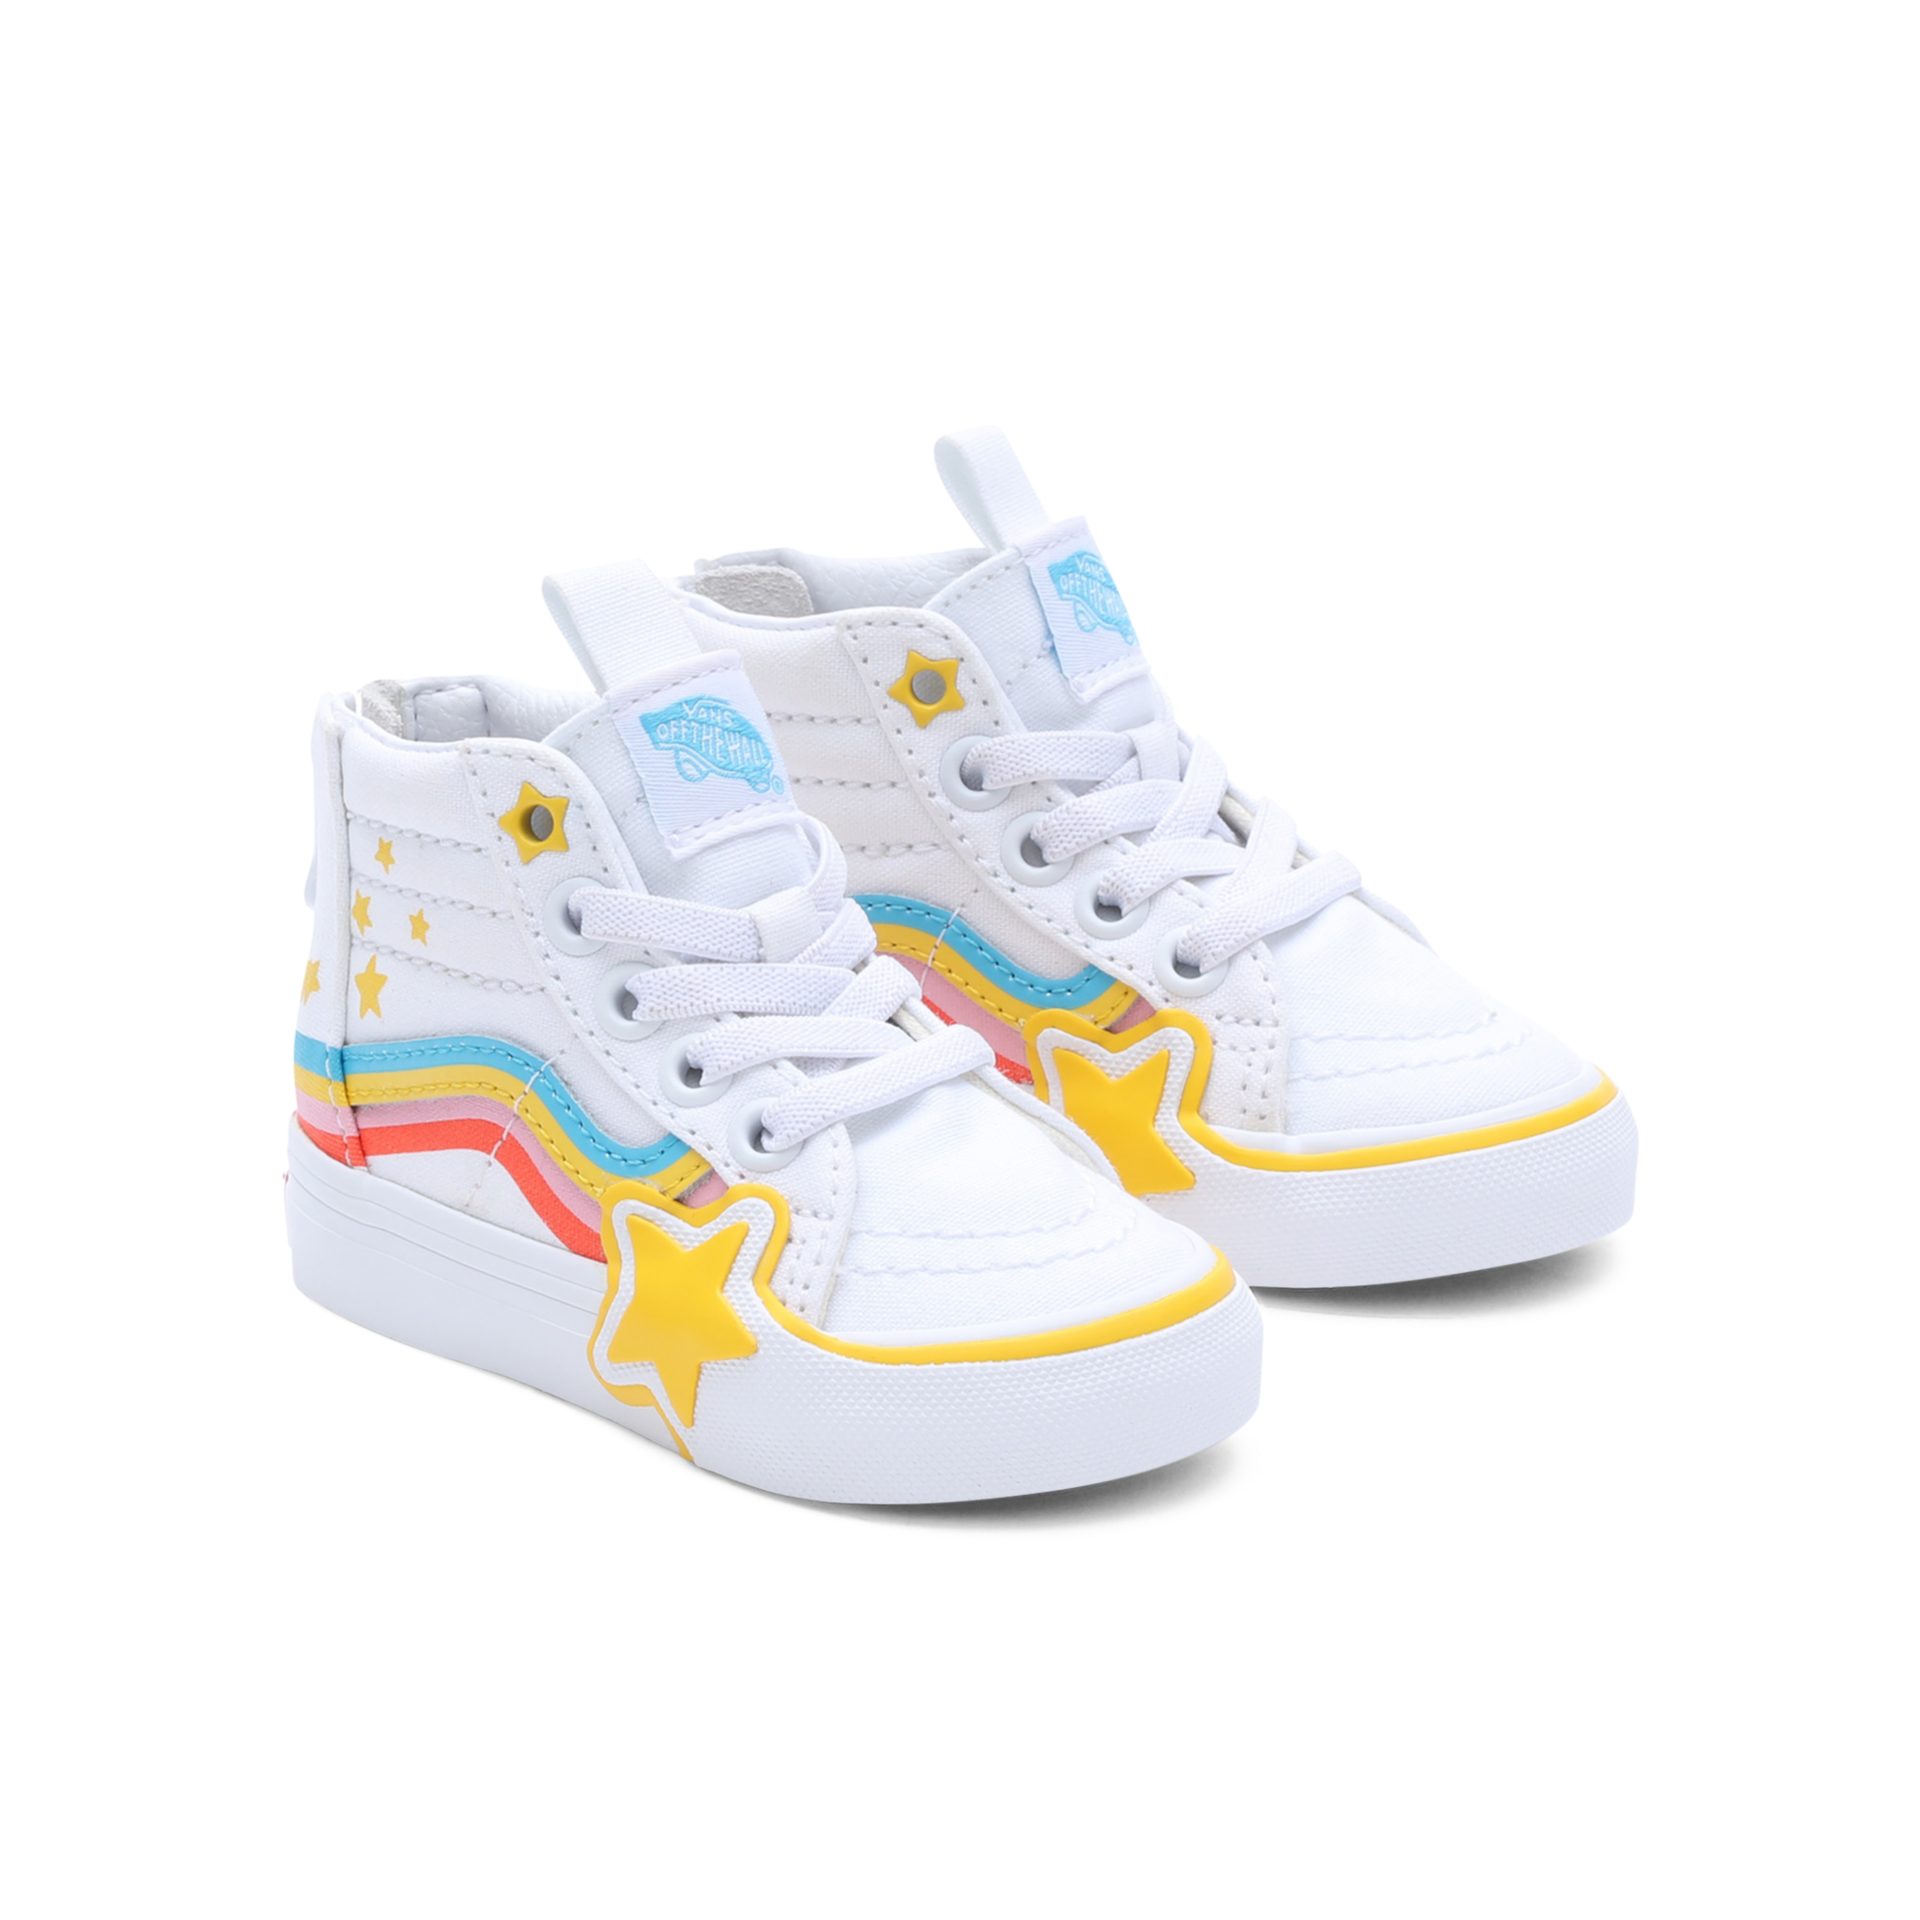 Rainbow Sneaker Rainbow SK8-Hi mit Vans Star auffälligem Design Zip Star